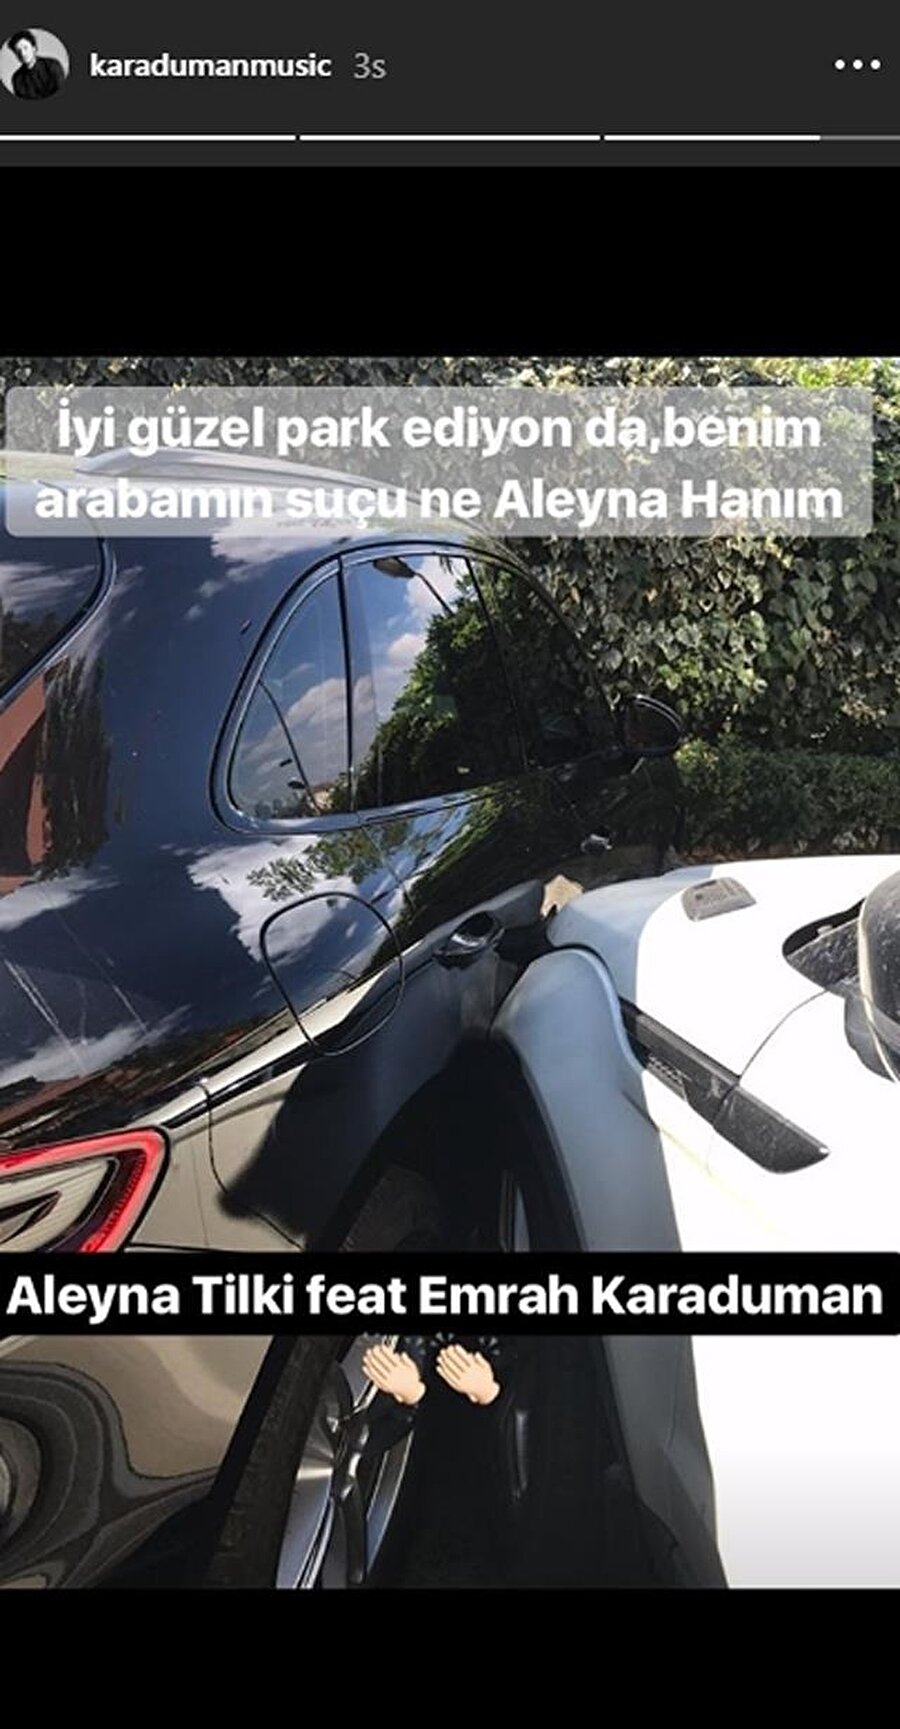 Kaza sonrası Emrah Karaduman'ın Instagram hesabından yaptığı paylaşım.